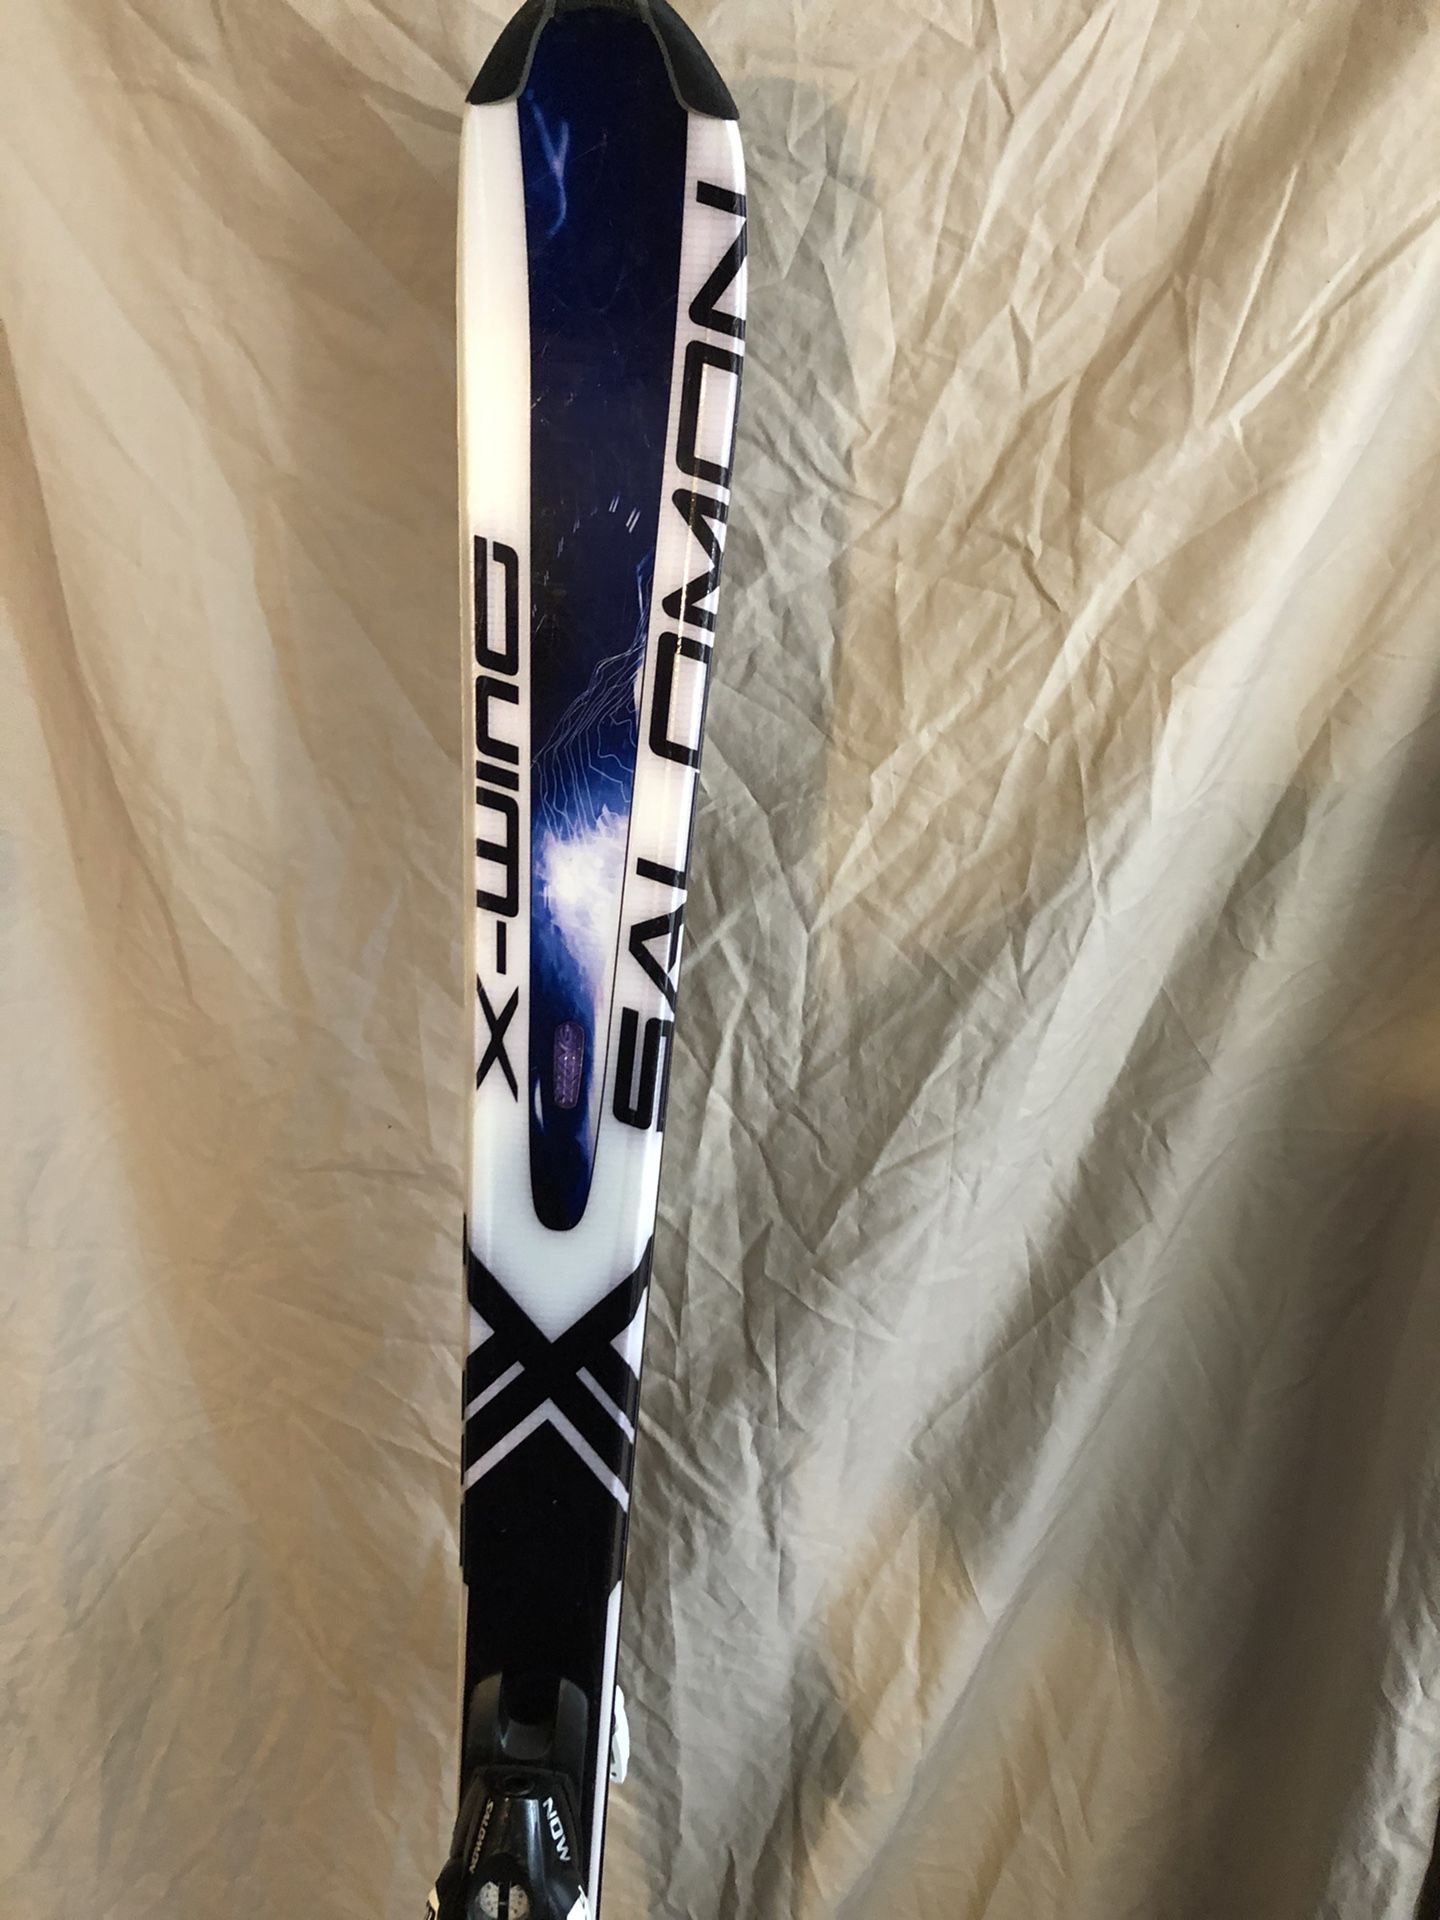 Brand New Salomon X-wing 178cm All Mountain Ski